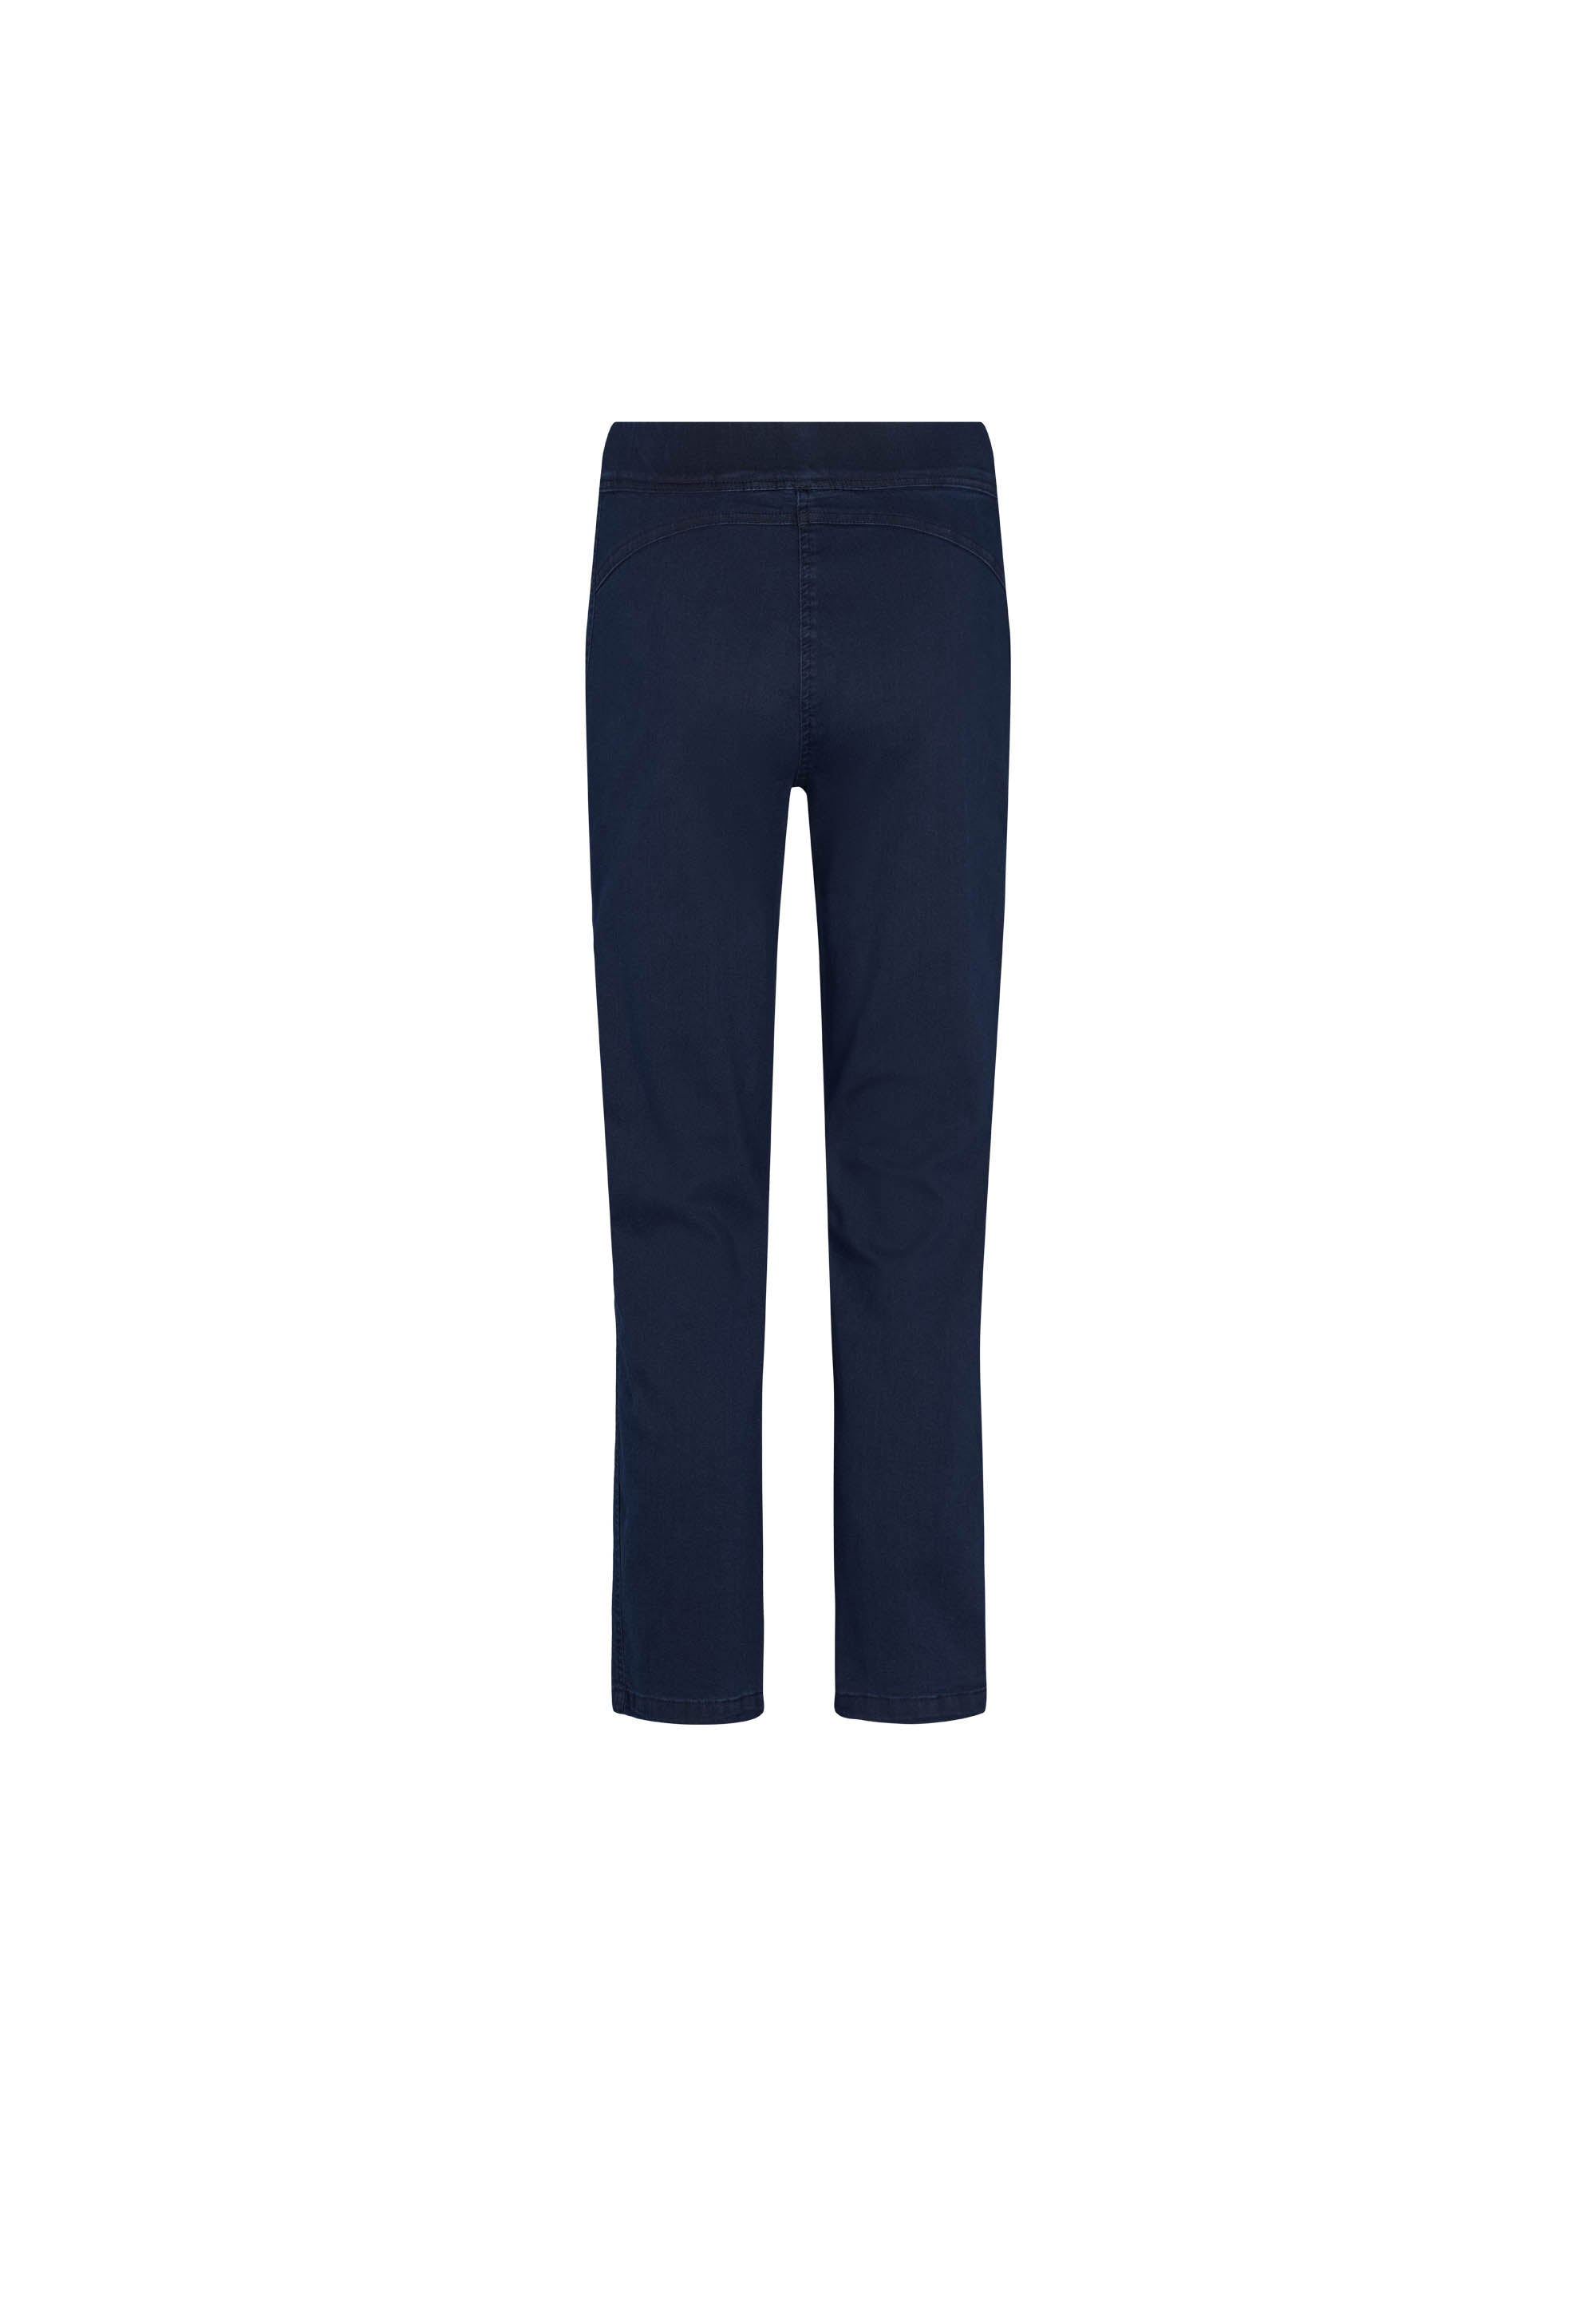 LAURIE Serene Regular - Extra Short Length Trousers REGULAR 49520 Dark Blue Denim